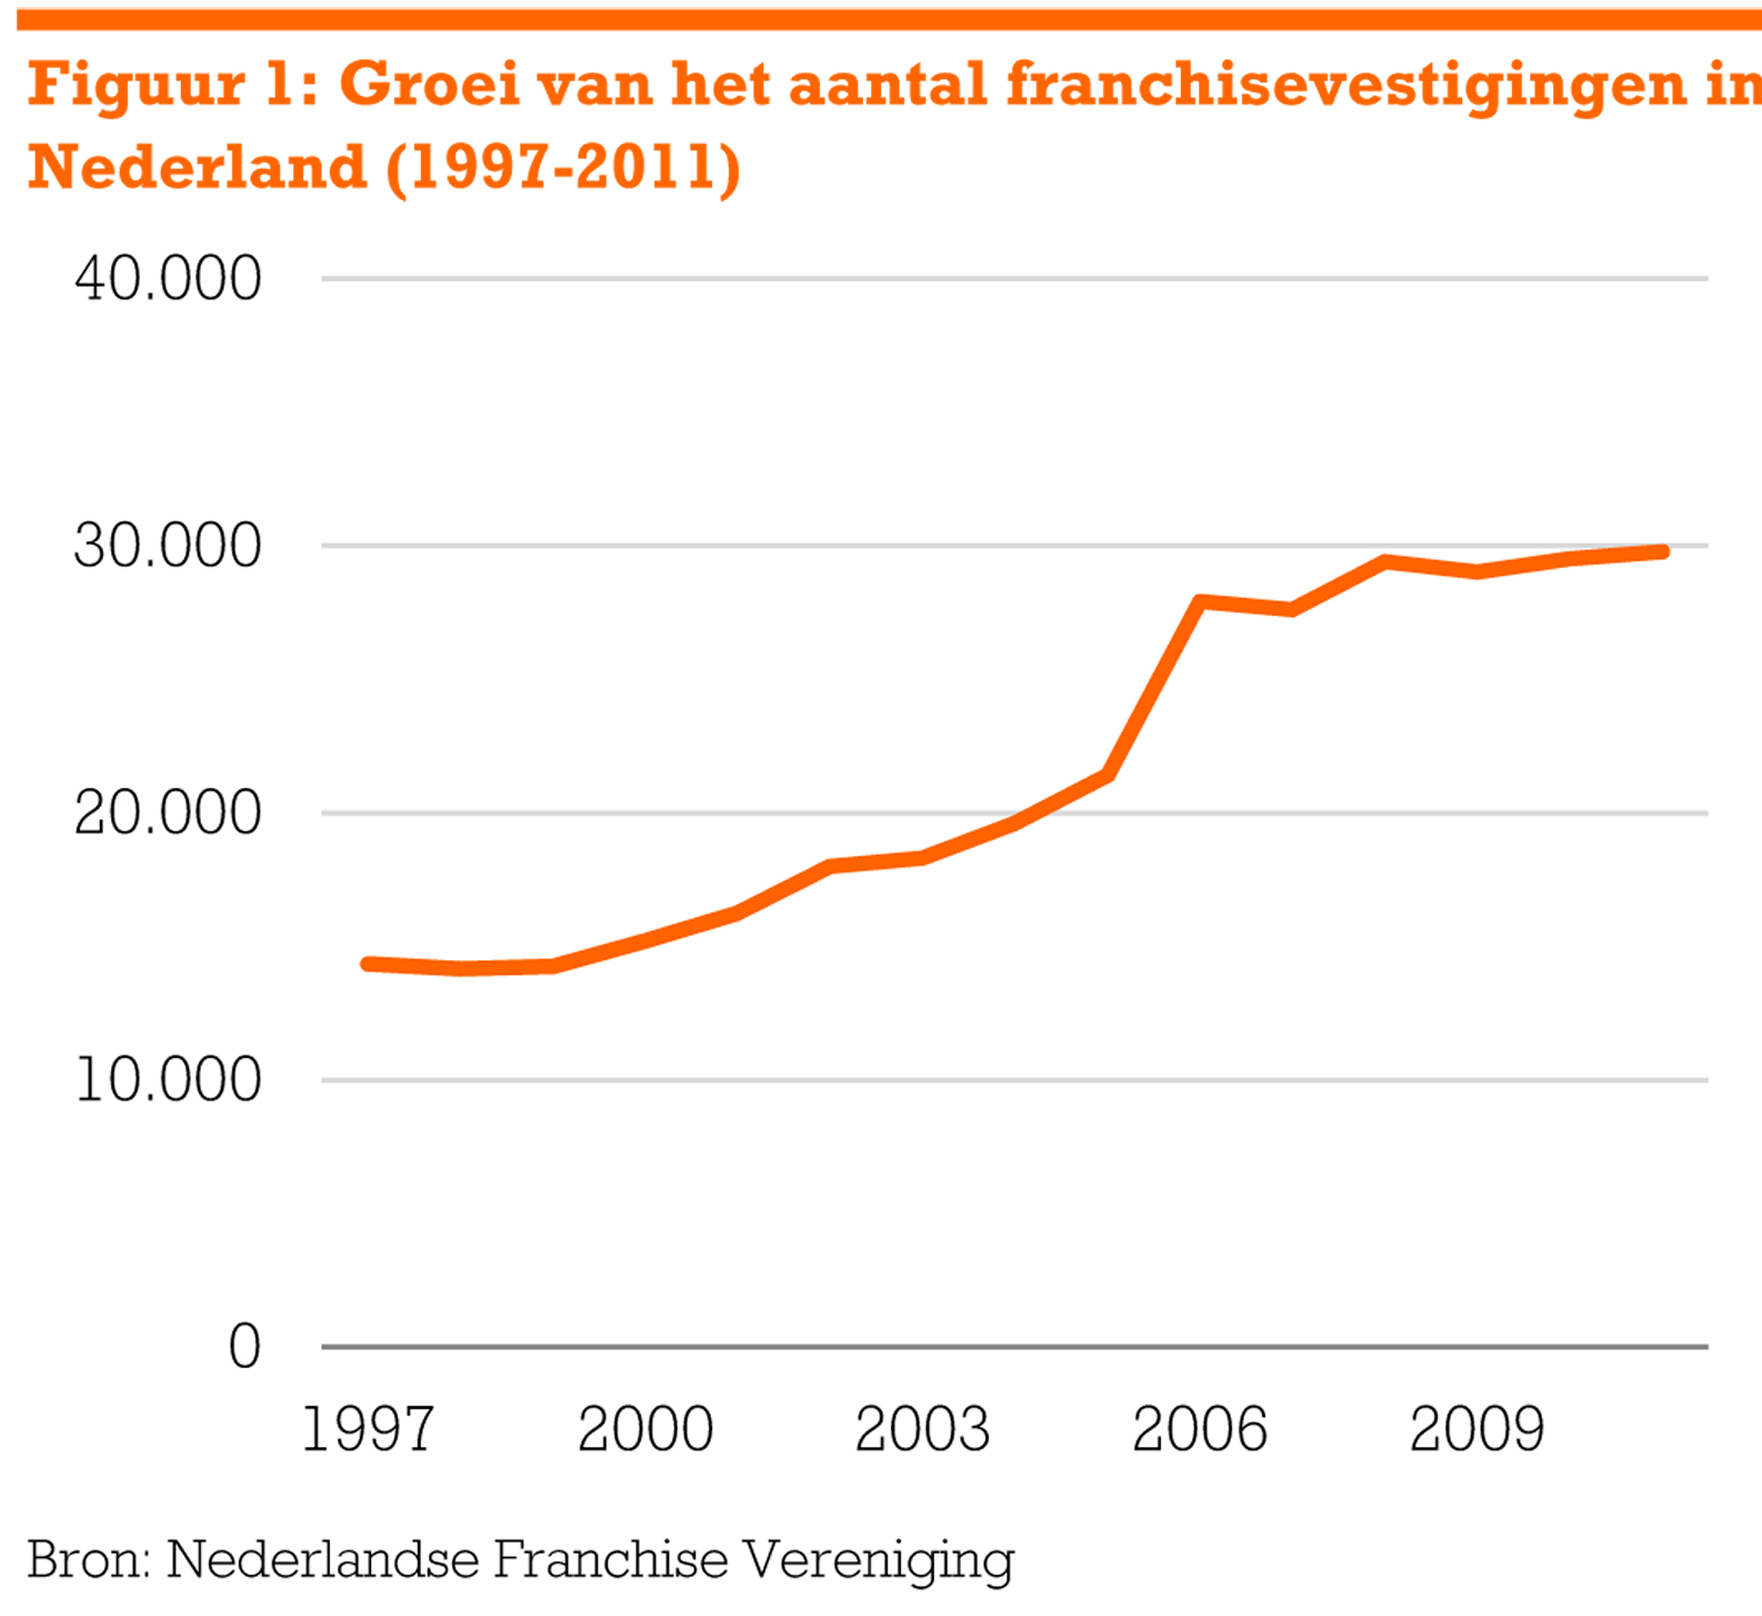 Groei van het aantal franchisevestigingen in Nederland